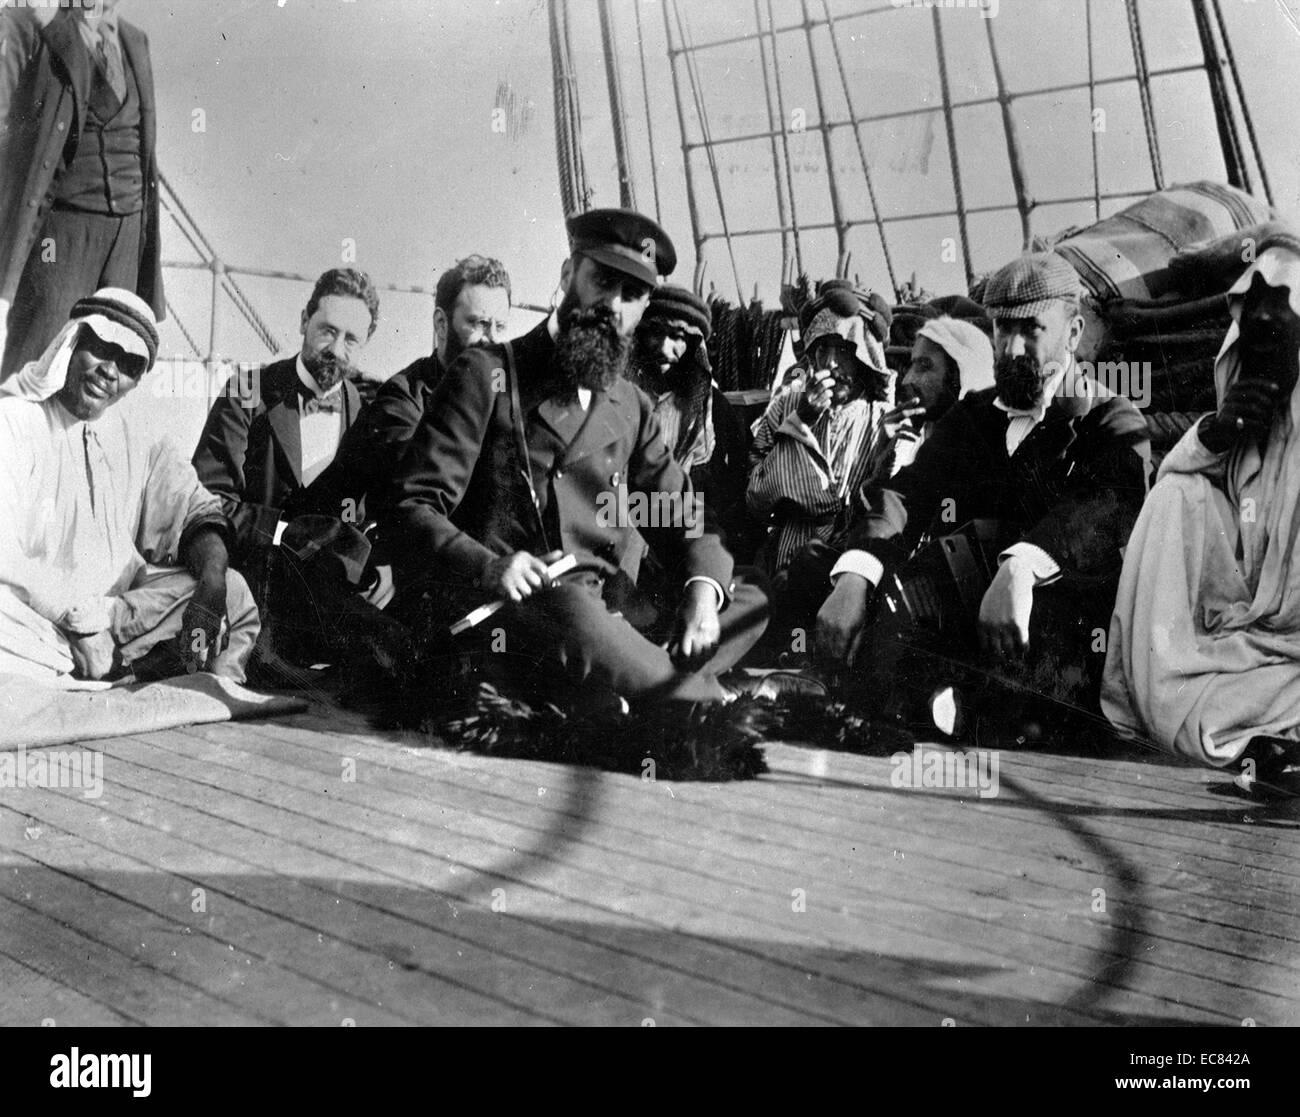 Herzl et partie sur leur façon de visiter la Palestine à bord du navire russe Nicolas II "Imperator", voile d'Alexandrie vers le port de Jaffa. Herzl était un journaliste austro-hongrois, dramaturge, écrivain et activiste politique. Il est considéré comme ayant été le père de la Le Sionisme politique. Banque D'Images